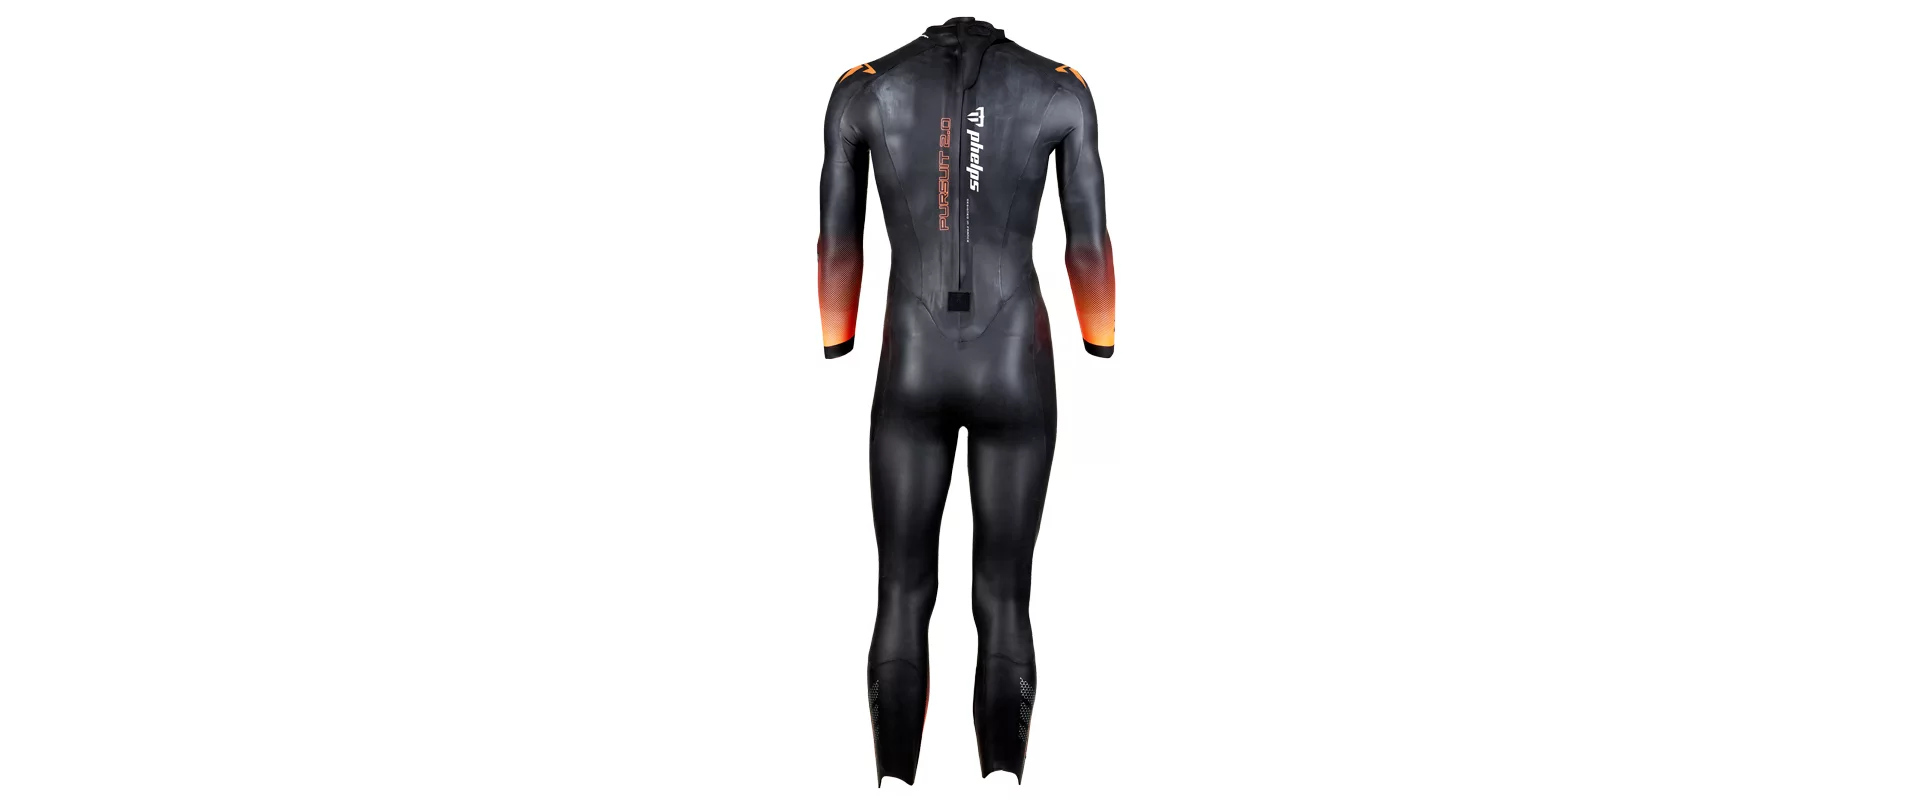 Phelps Pursuit Wetsuit / Мужской гидрокостюм для триатлона и откртыой воды фото 4